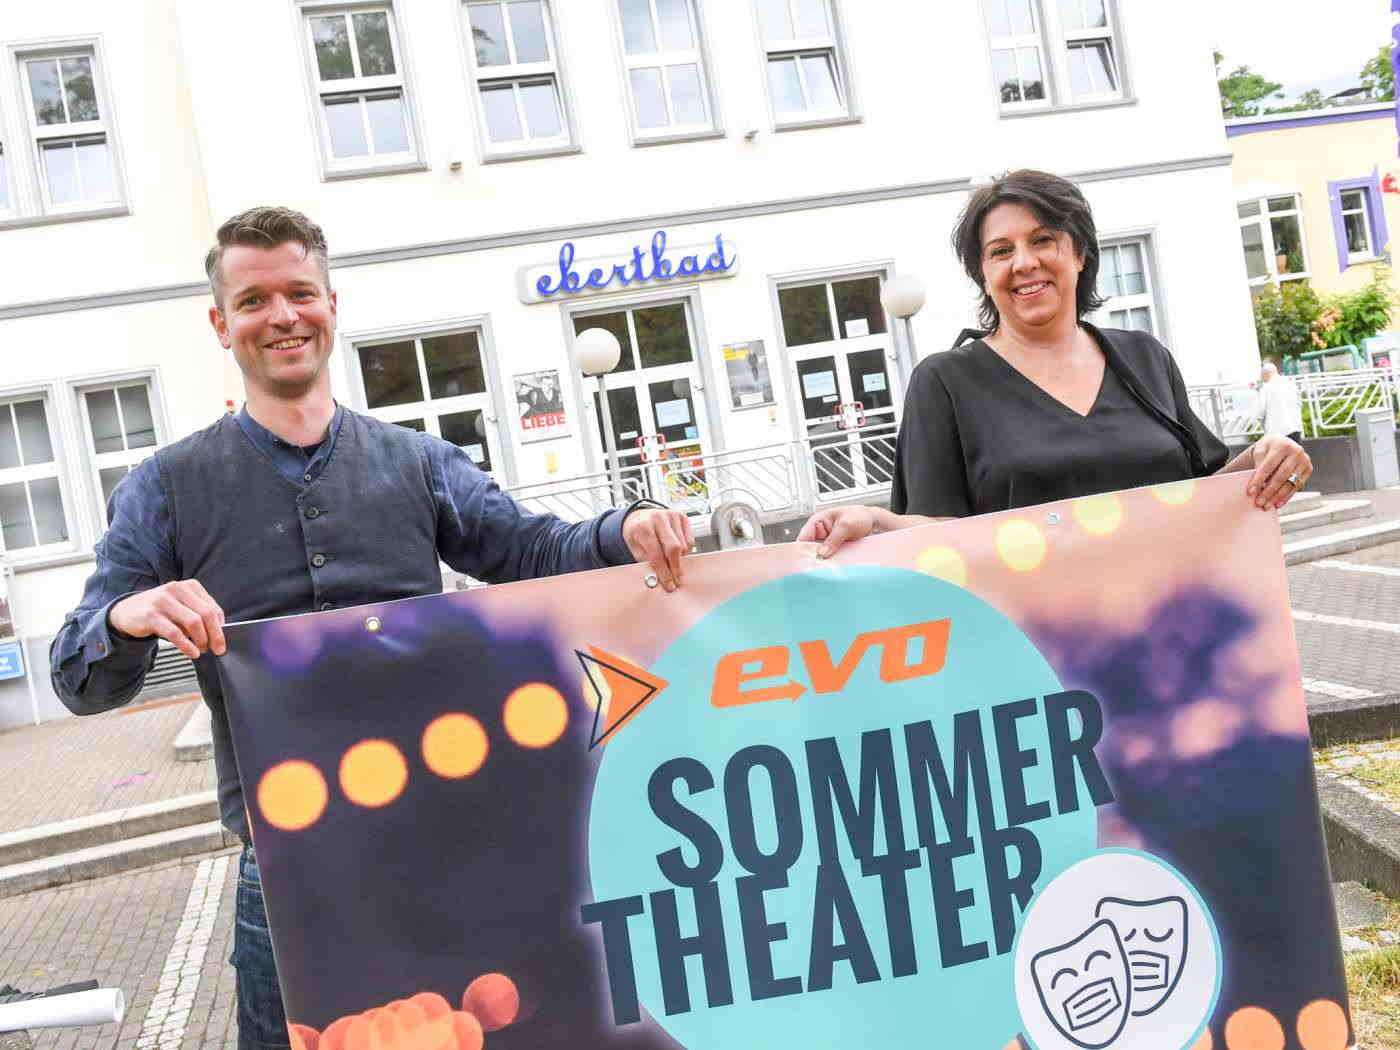 Zwei Personen stehen vor dem Ebertbad und halten ein Werbeplakat für das evo Sommertheater hoch.